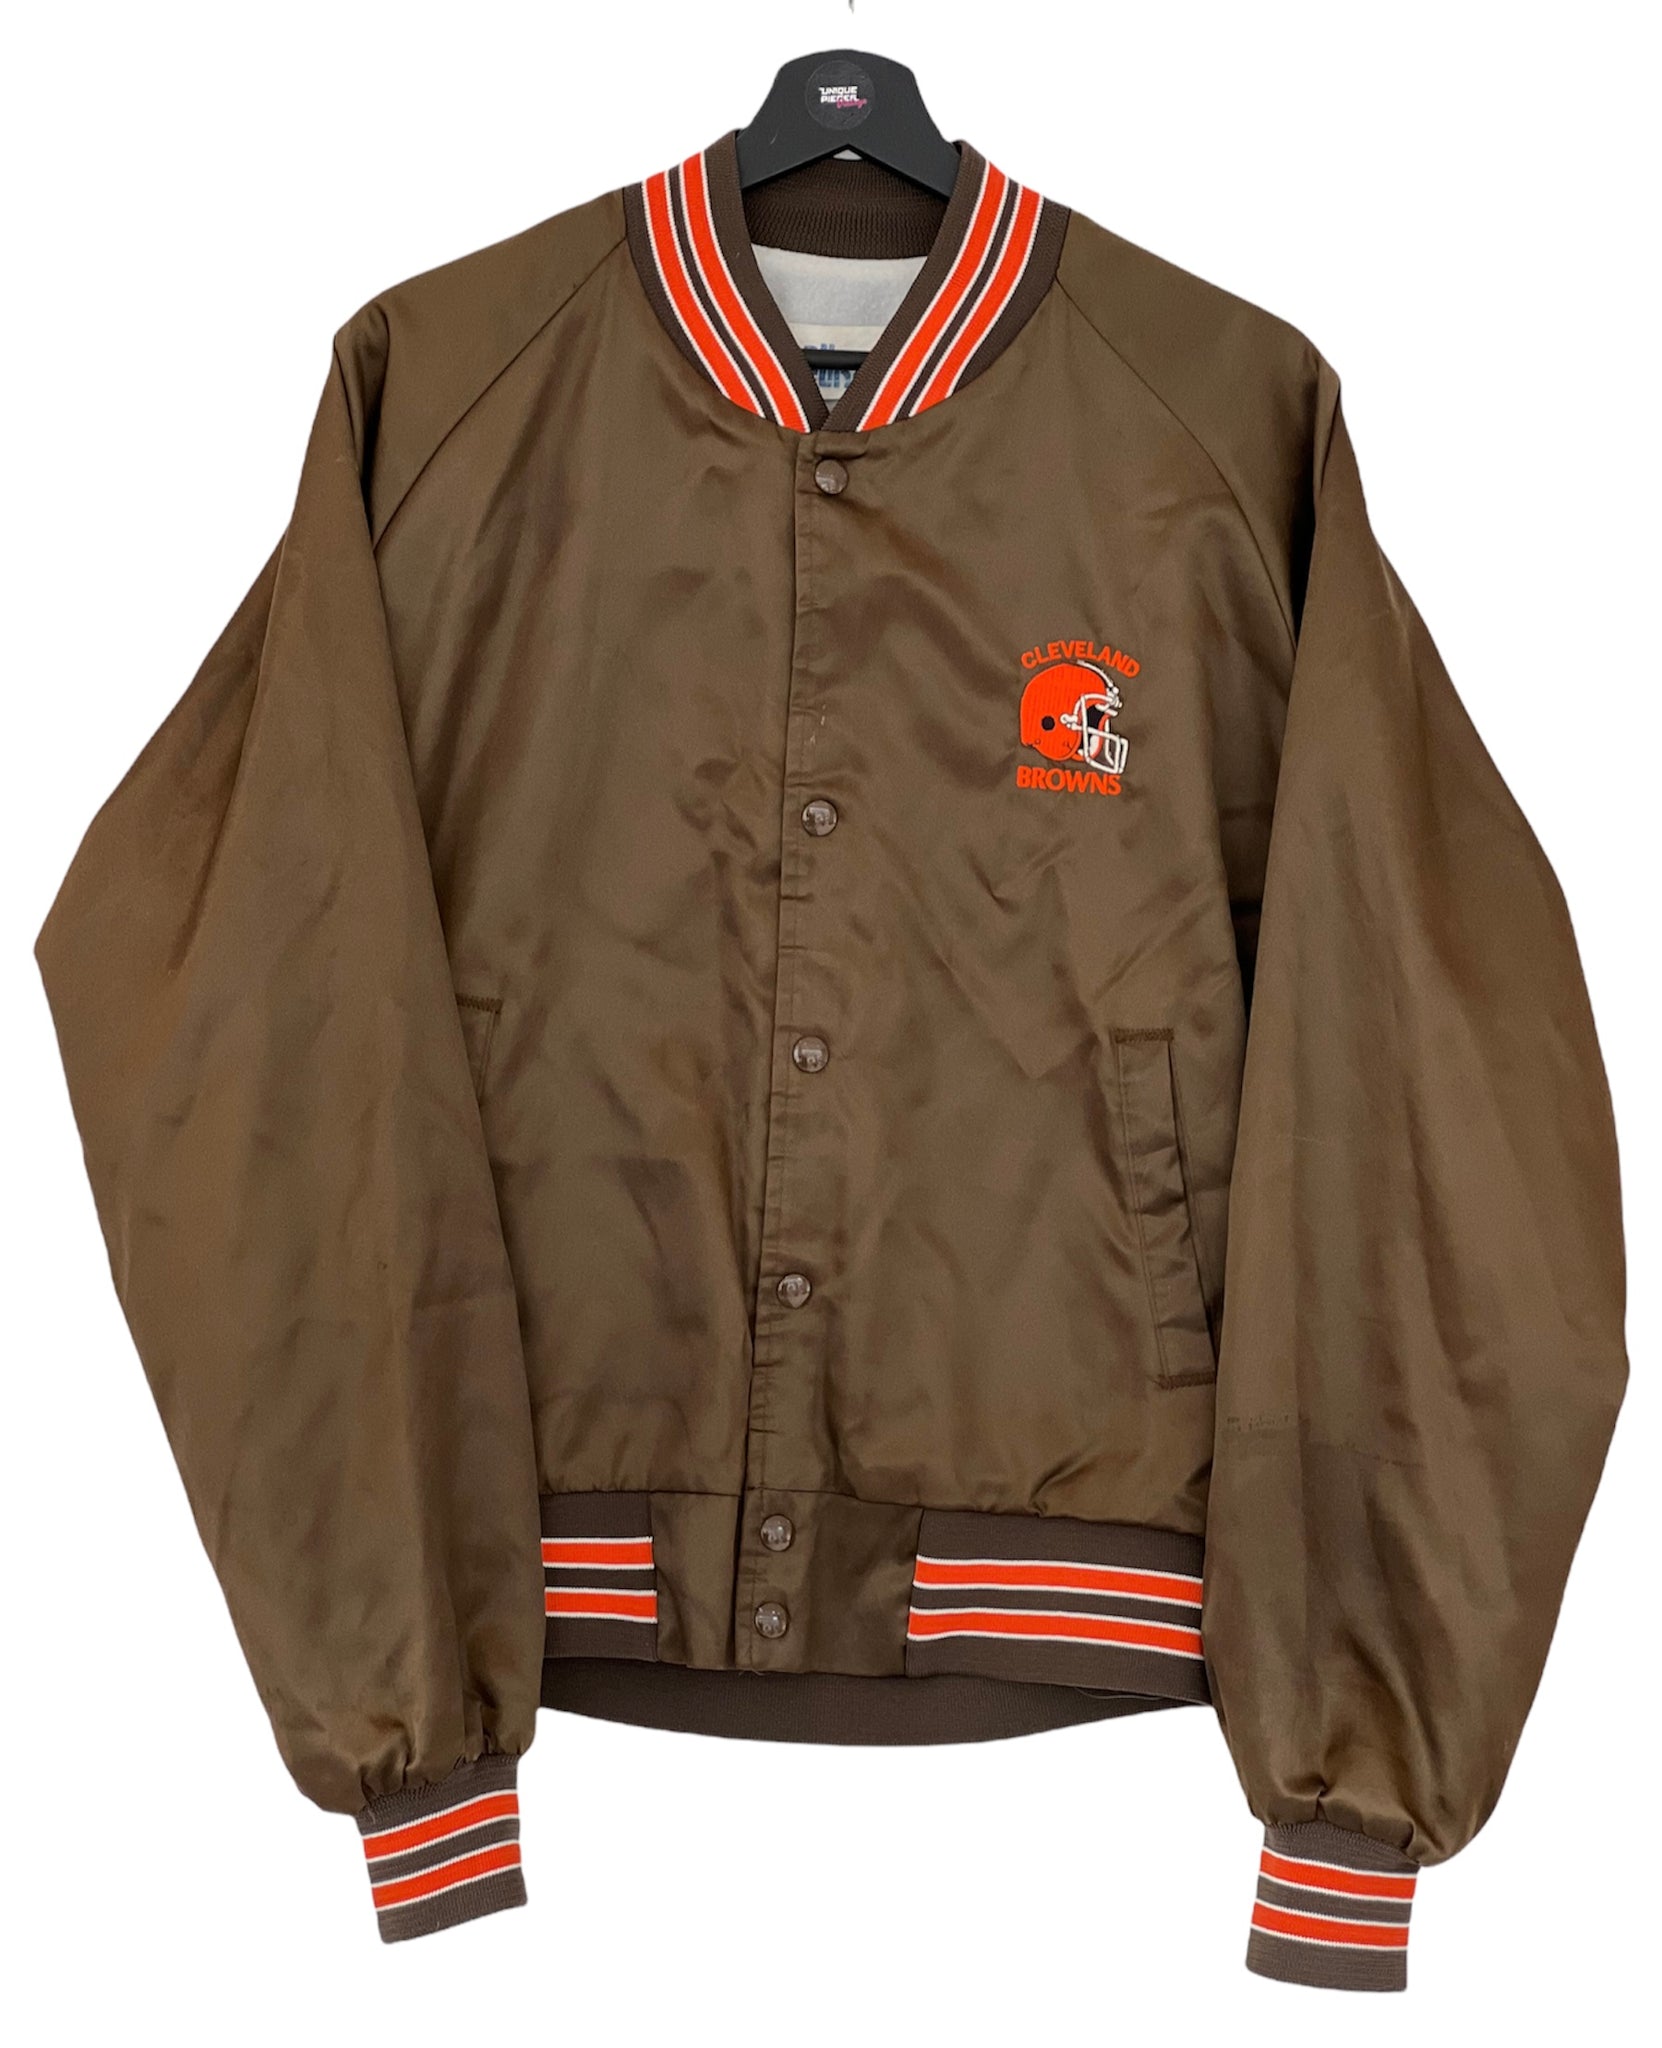 Chalk Line Cleveland Browns football satin jacket brown orange Size Large kids